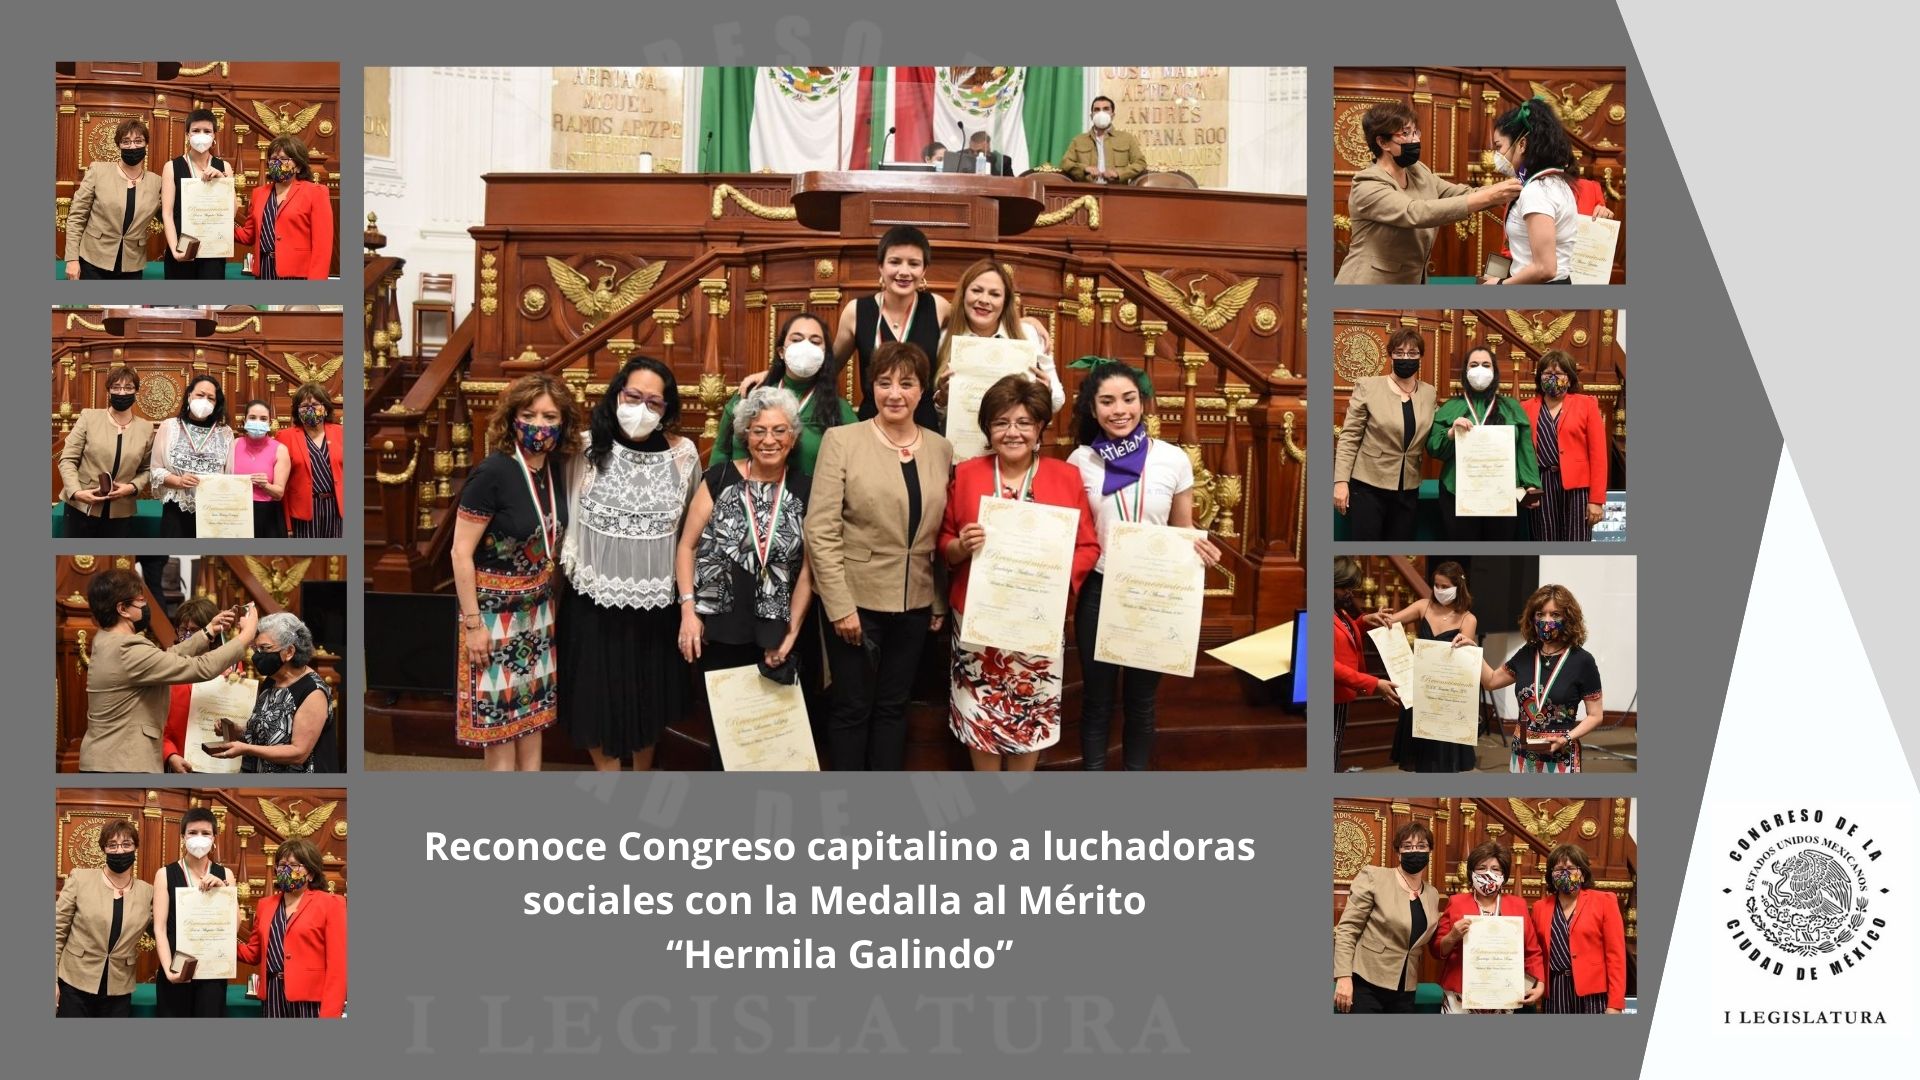 Reconoce Congreso capitalino a luchadoras sociales con la Medalla al Mérito “Hermila Galindo.”